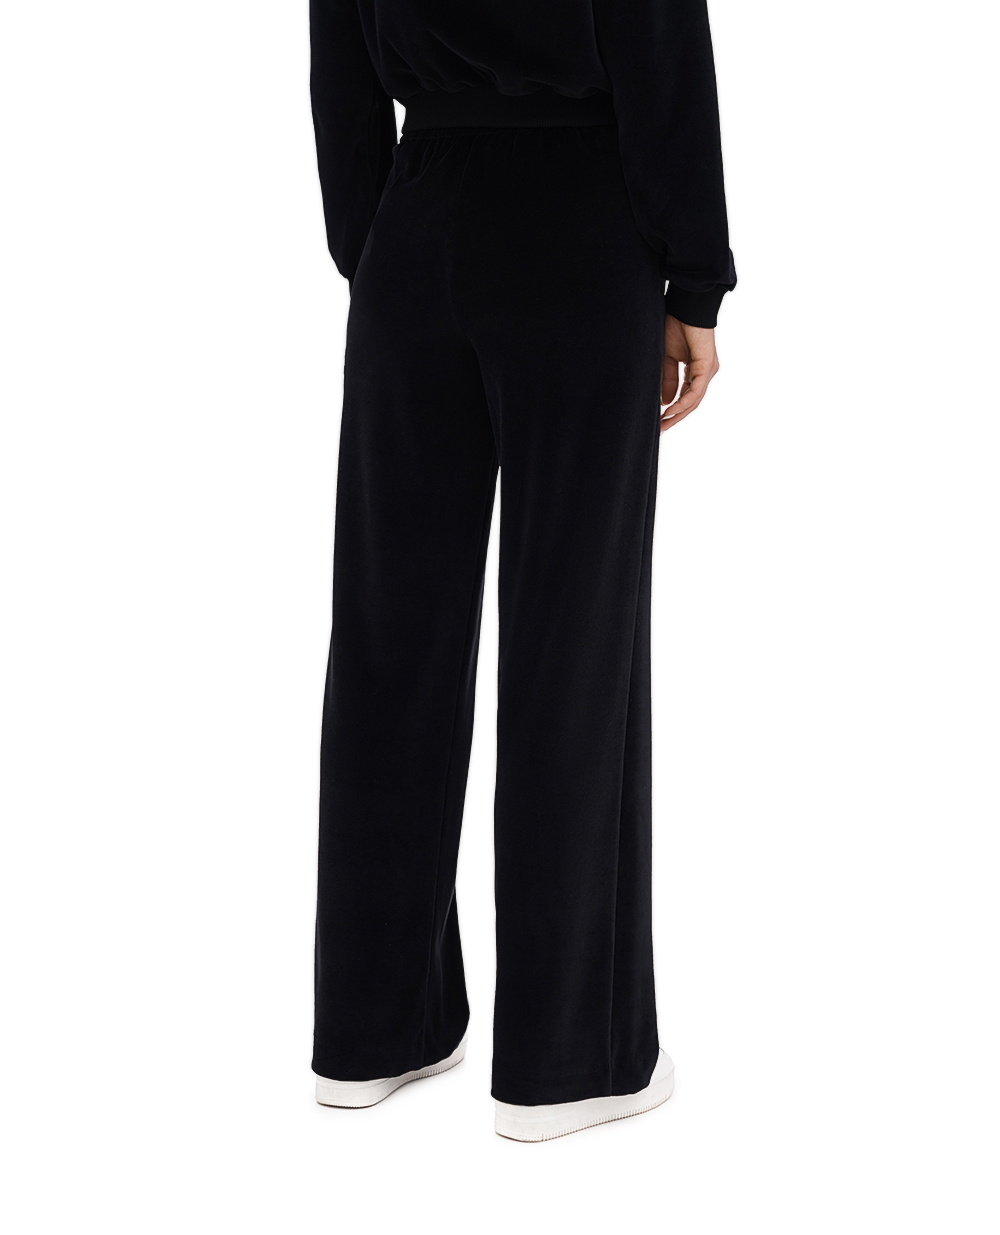 Спортивні штани DGVIB3 (костюм) Dolce&Gabbana FT004Z-FUVJH, чорний колір • Купити в інтернет-магазині Kameron